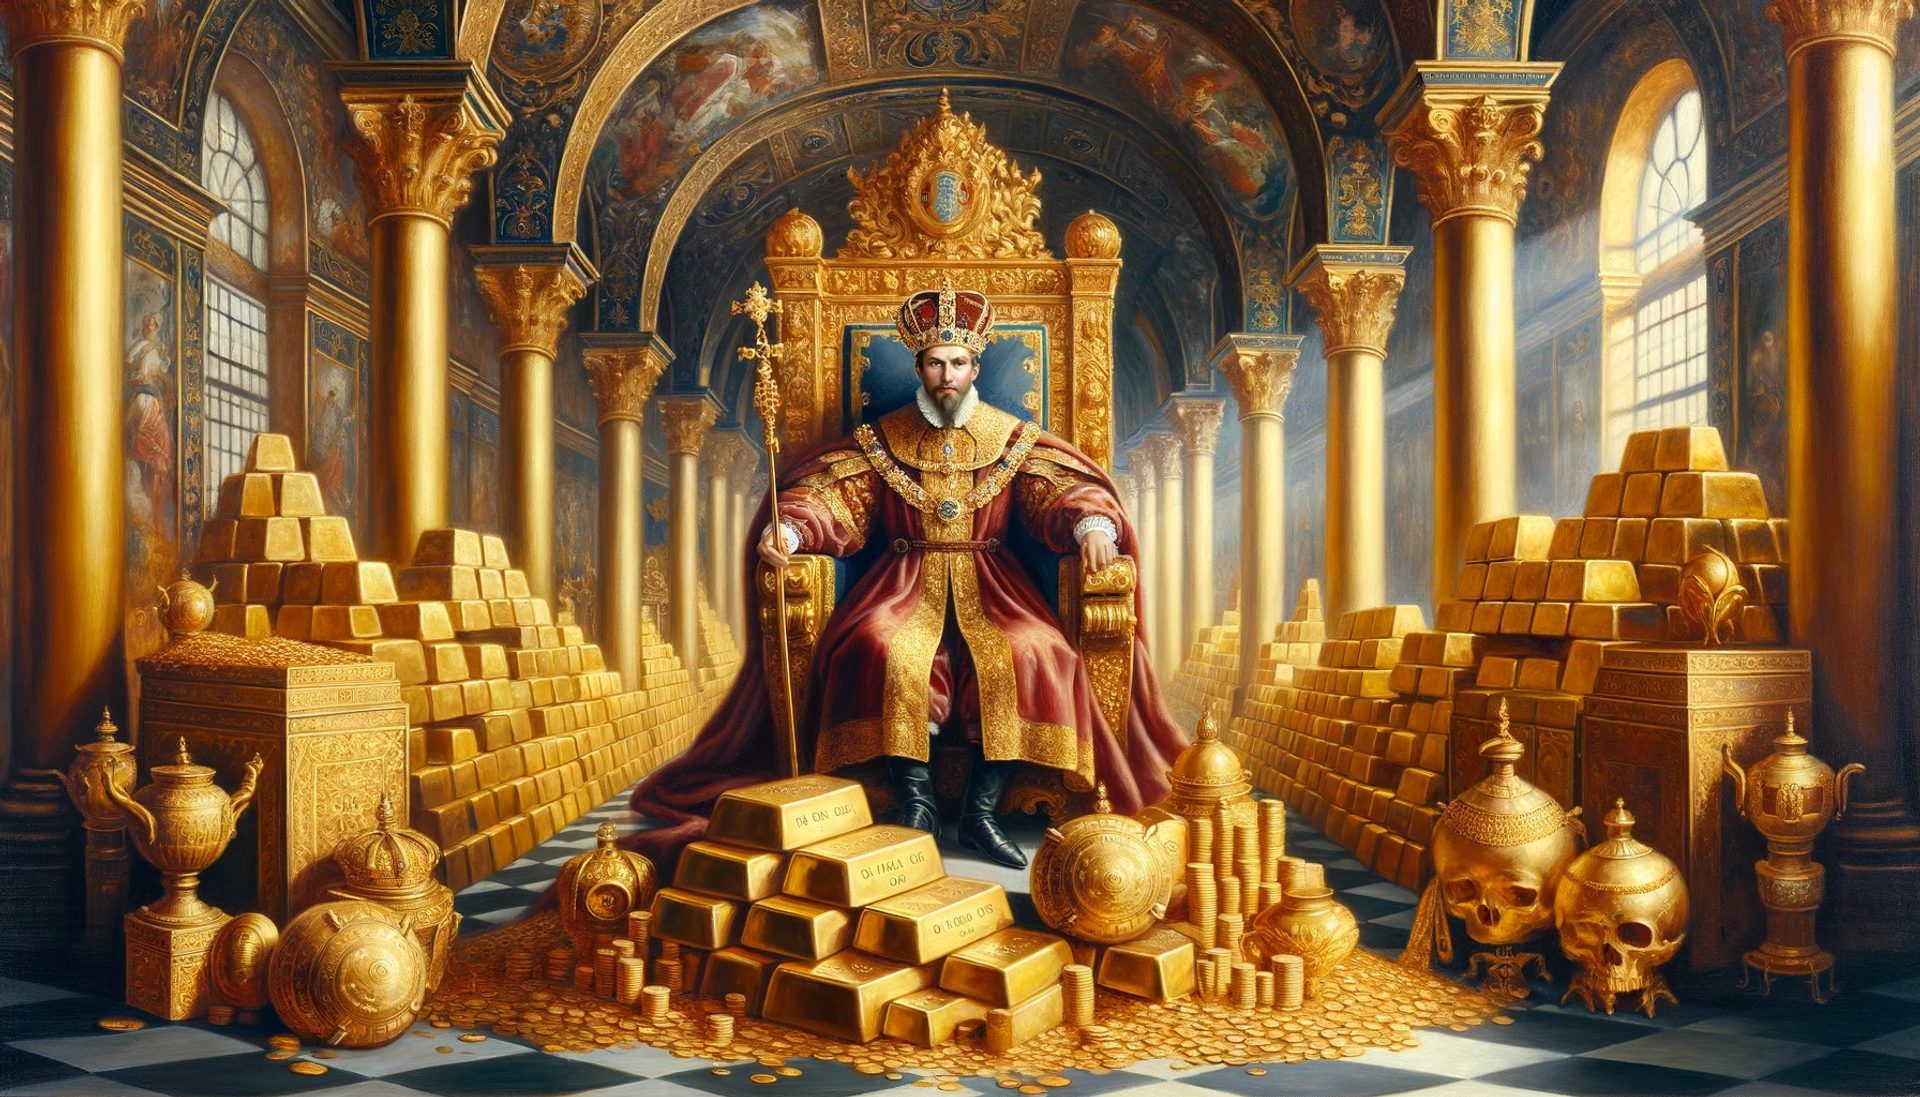 Un monarca rodeado de abundantes reservas de oro. En una época en que el oro era el principal indicador de riqueza, cada monarca deseaba más y más de él.